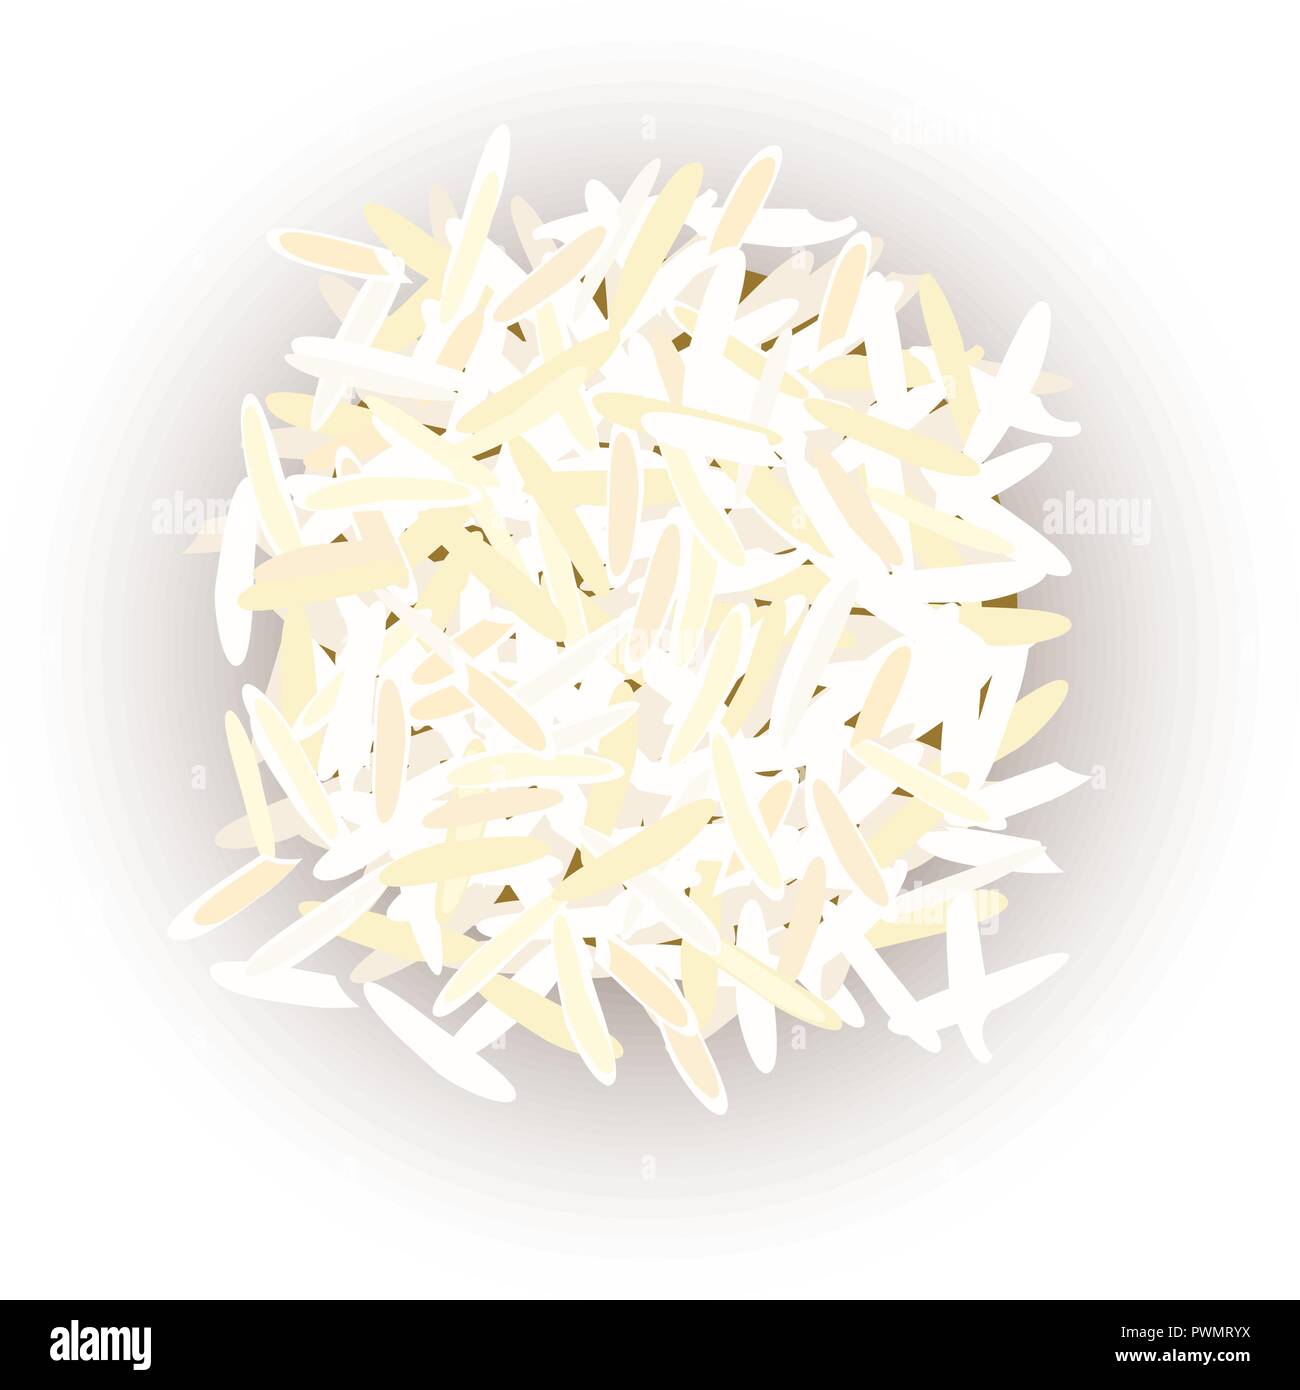 Grains de riz Basmati. les grains. Vector illustration. Pour la cuisine, café, magasin, restaurant, restauration rapide peut être utilisé comme étiquette tag poster Illustration de Vecteur